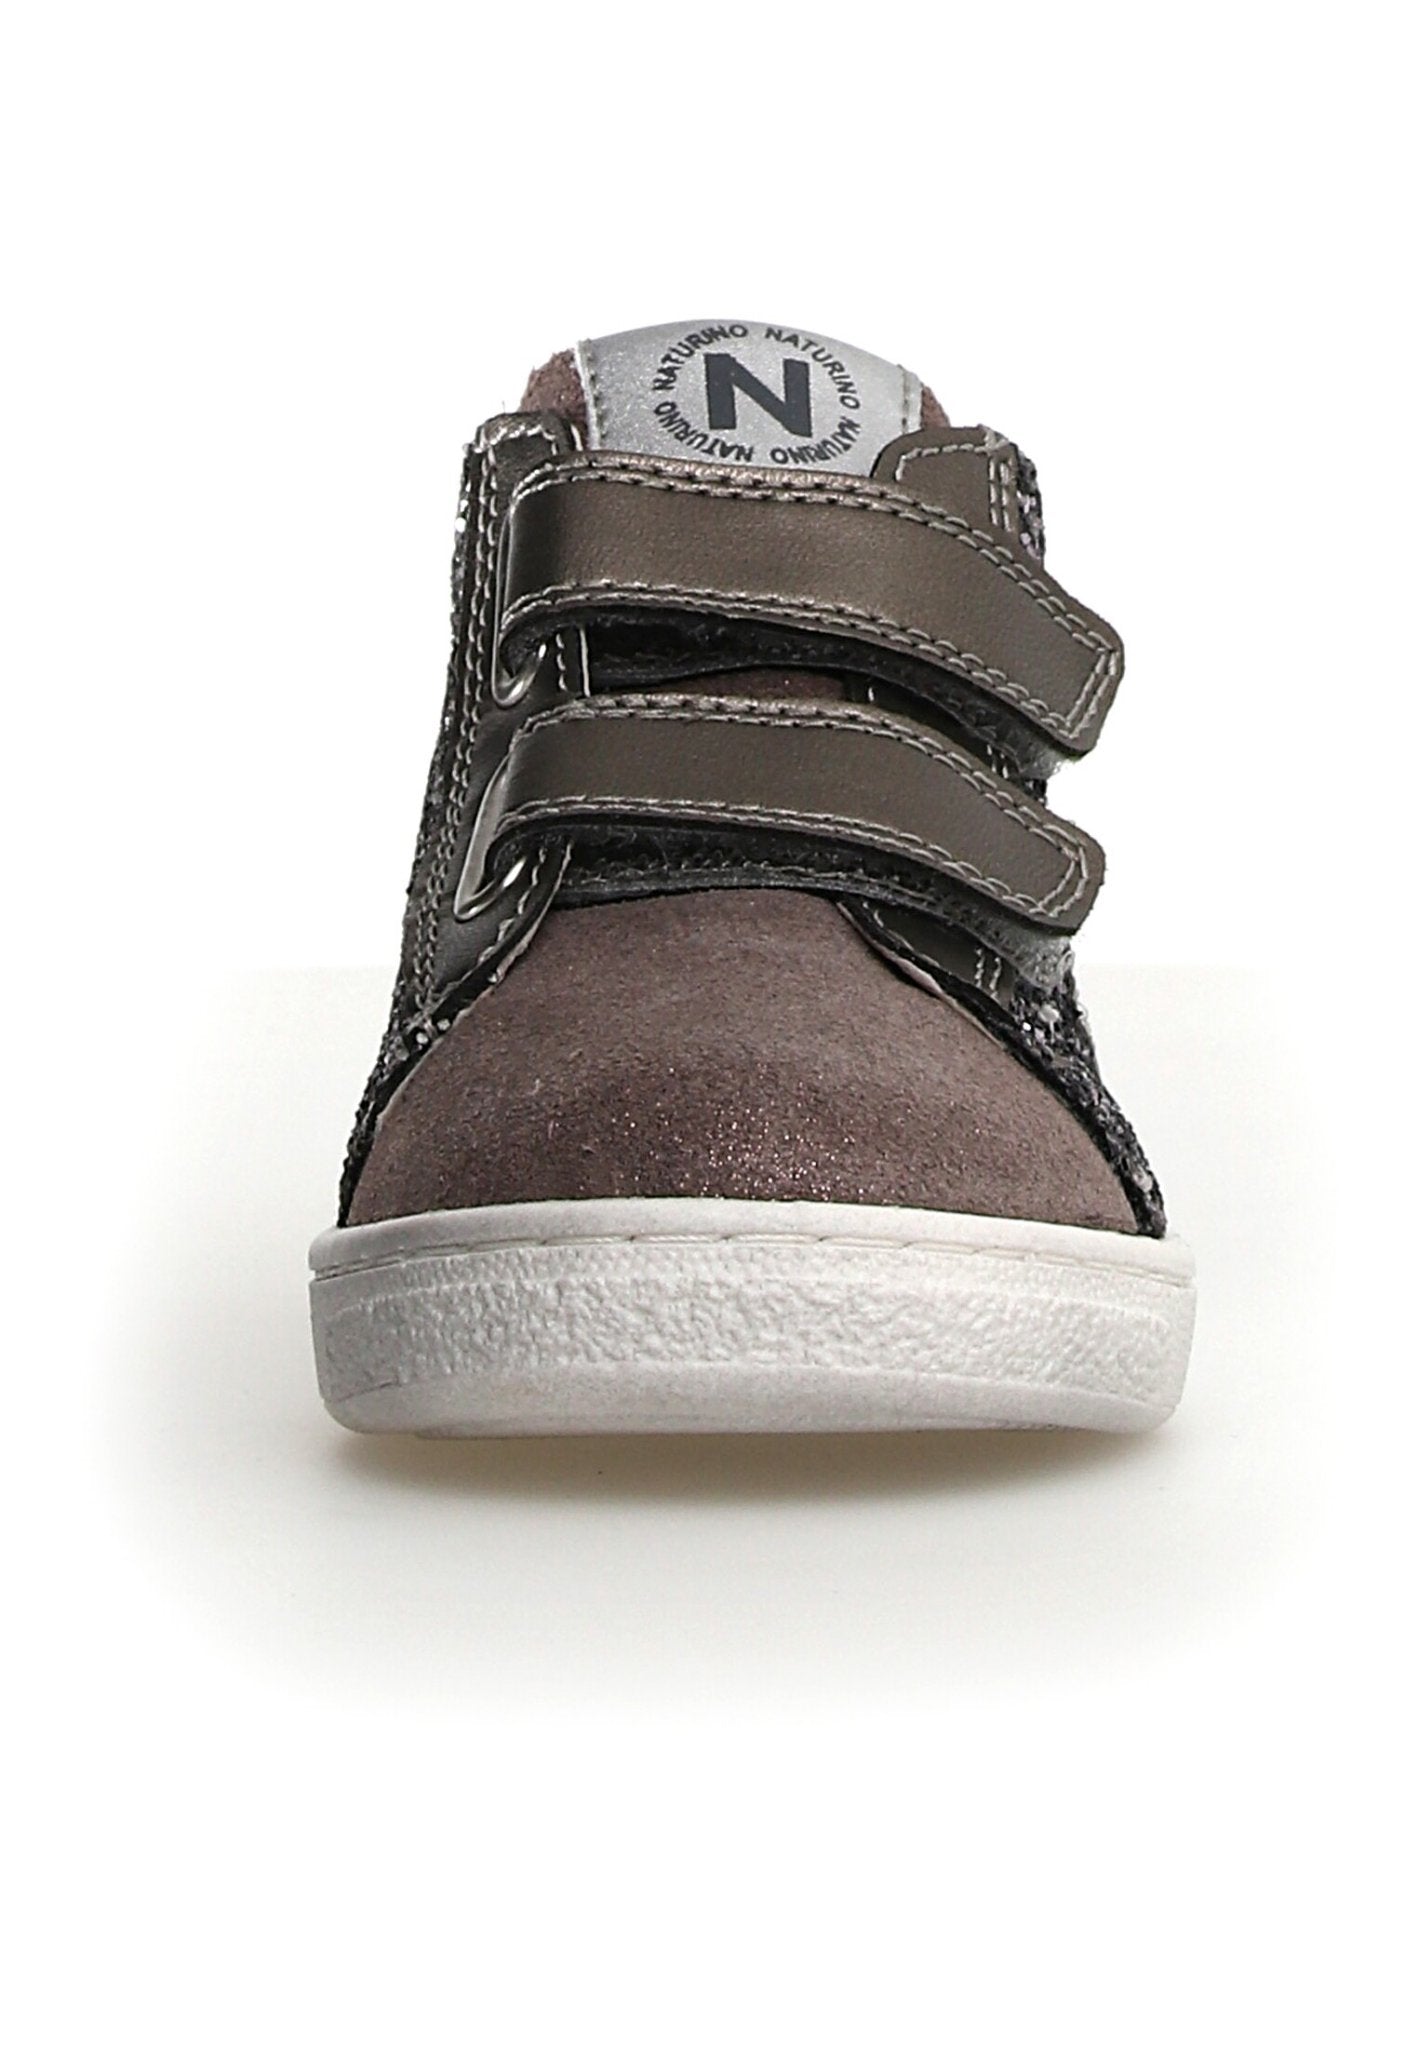 NATURINO PINN HIGH Noir glitter chaussures Basses Baskets